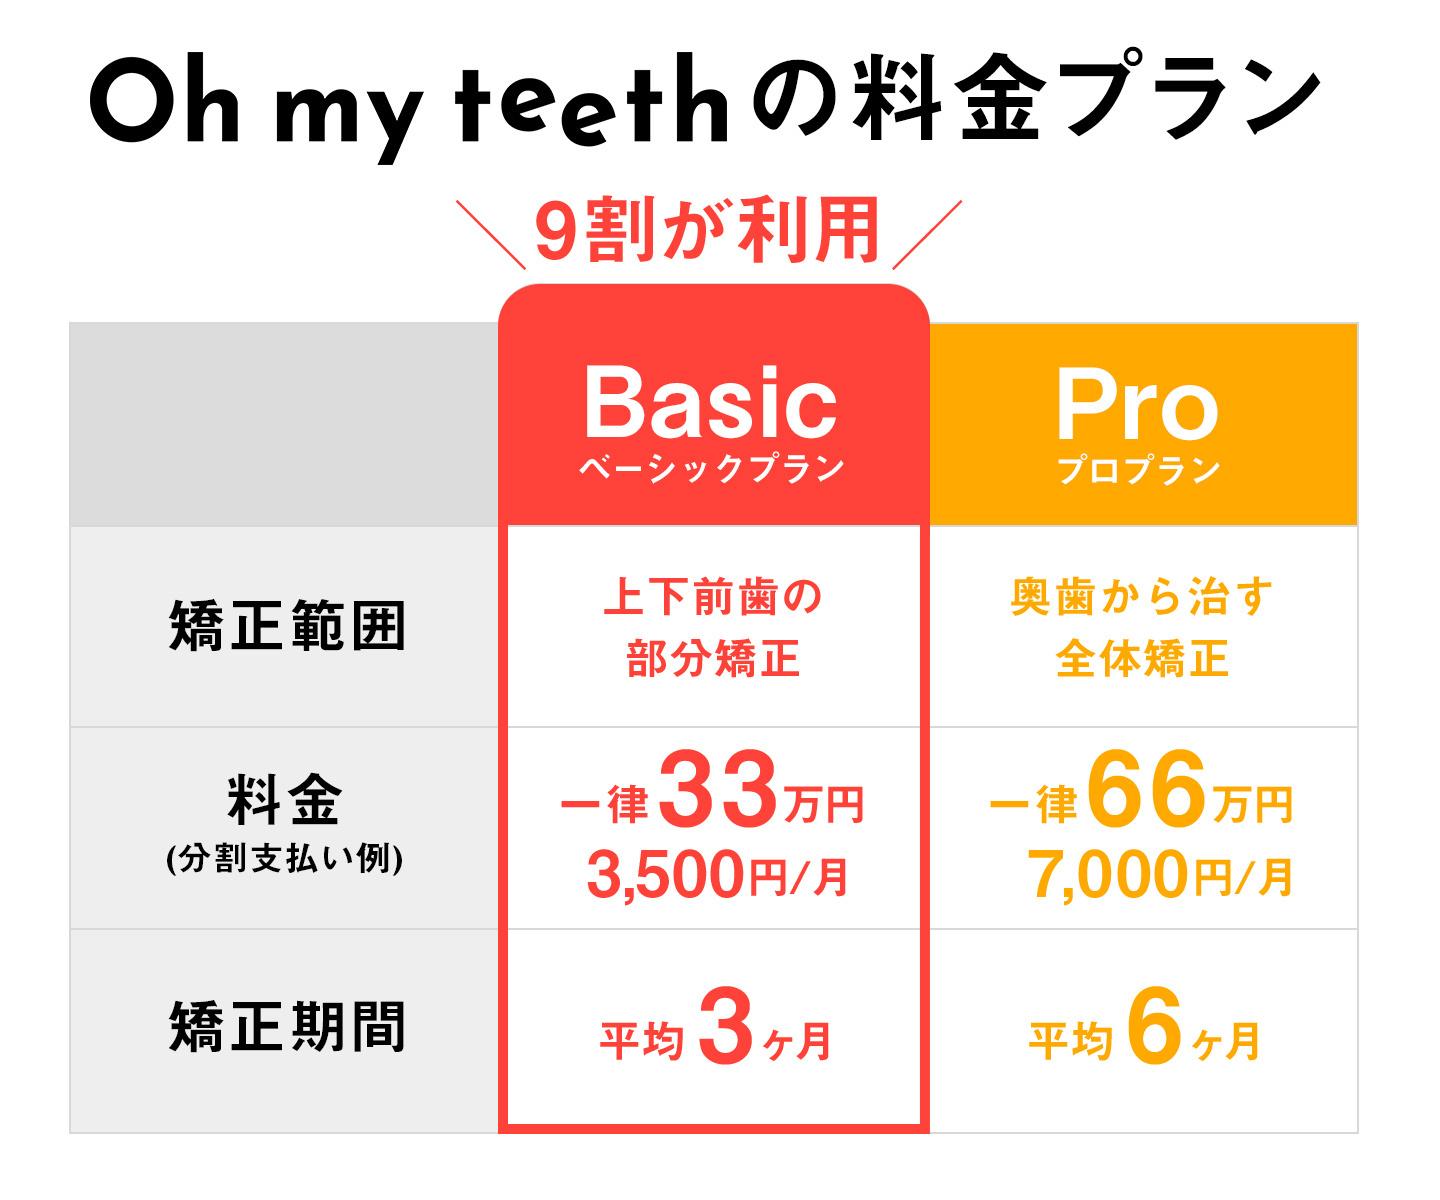 Oh my teethの料金プラン(3,500円・7,000円訴求)